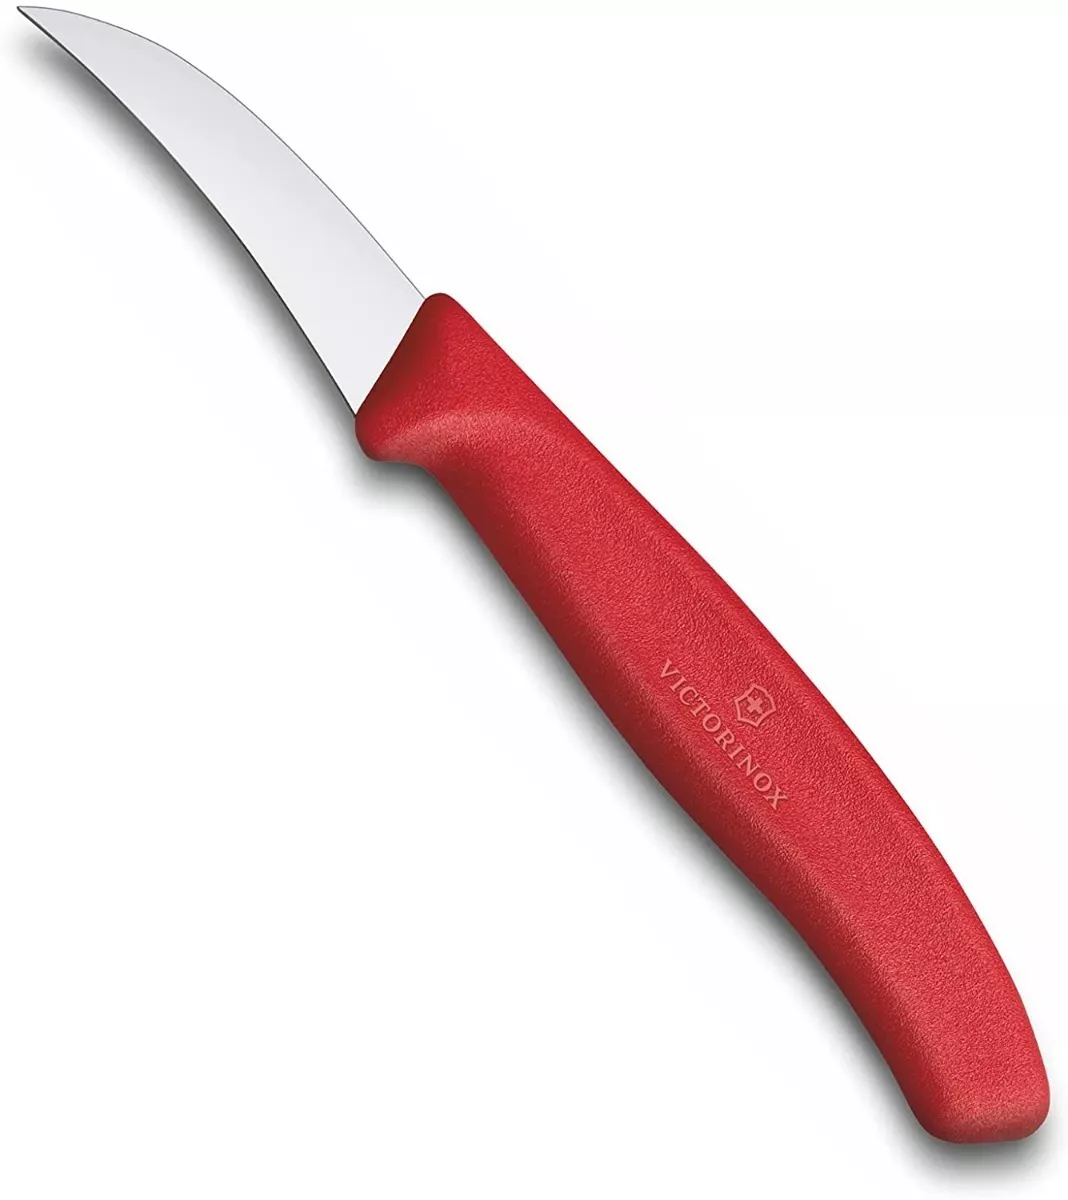 Primera imagen para búsqueda de cuchillos victorinox